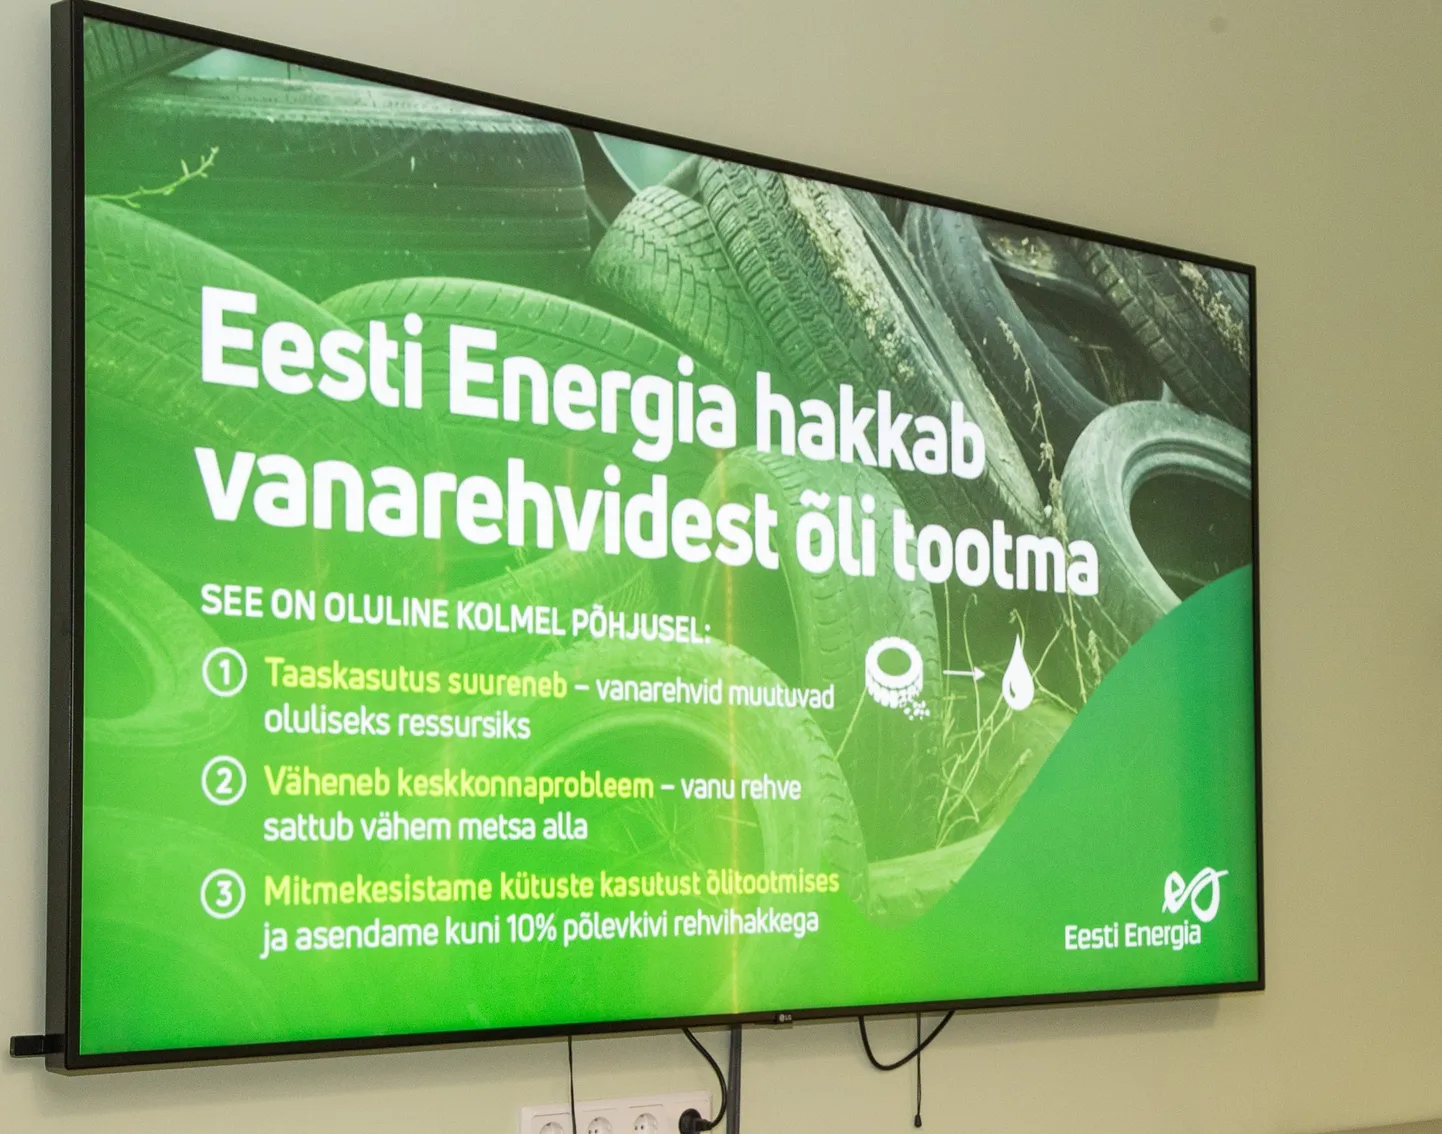 "Eesti Energia" начнет использовать старые покрышки в производстве сланцевого масла.